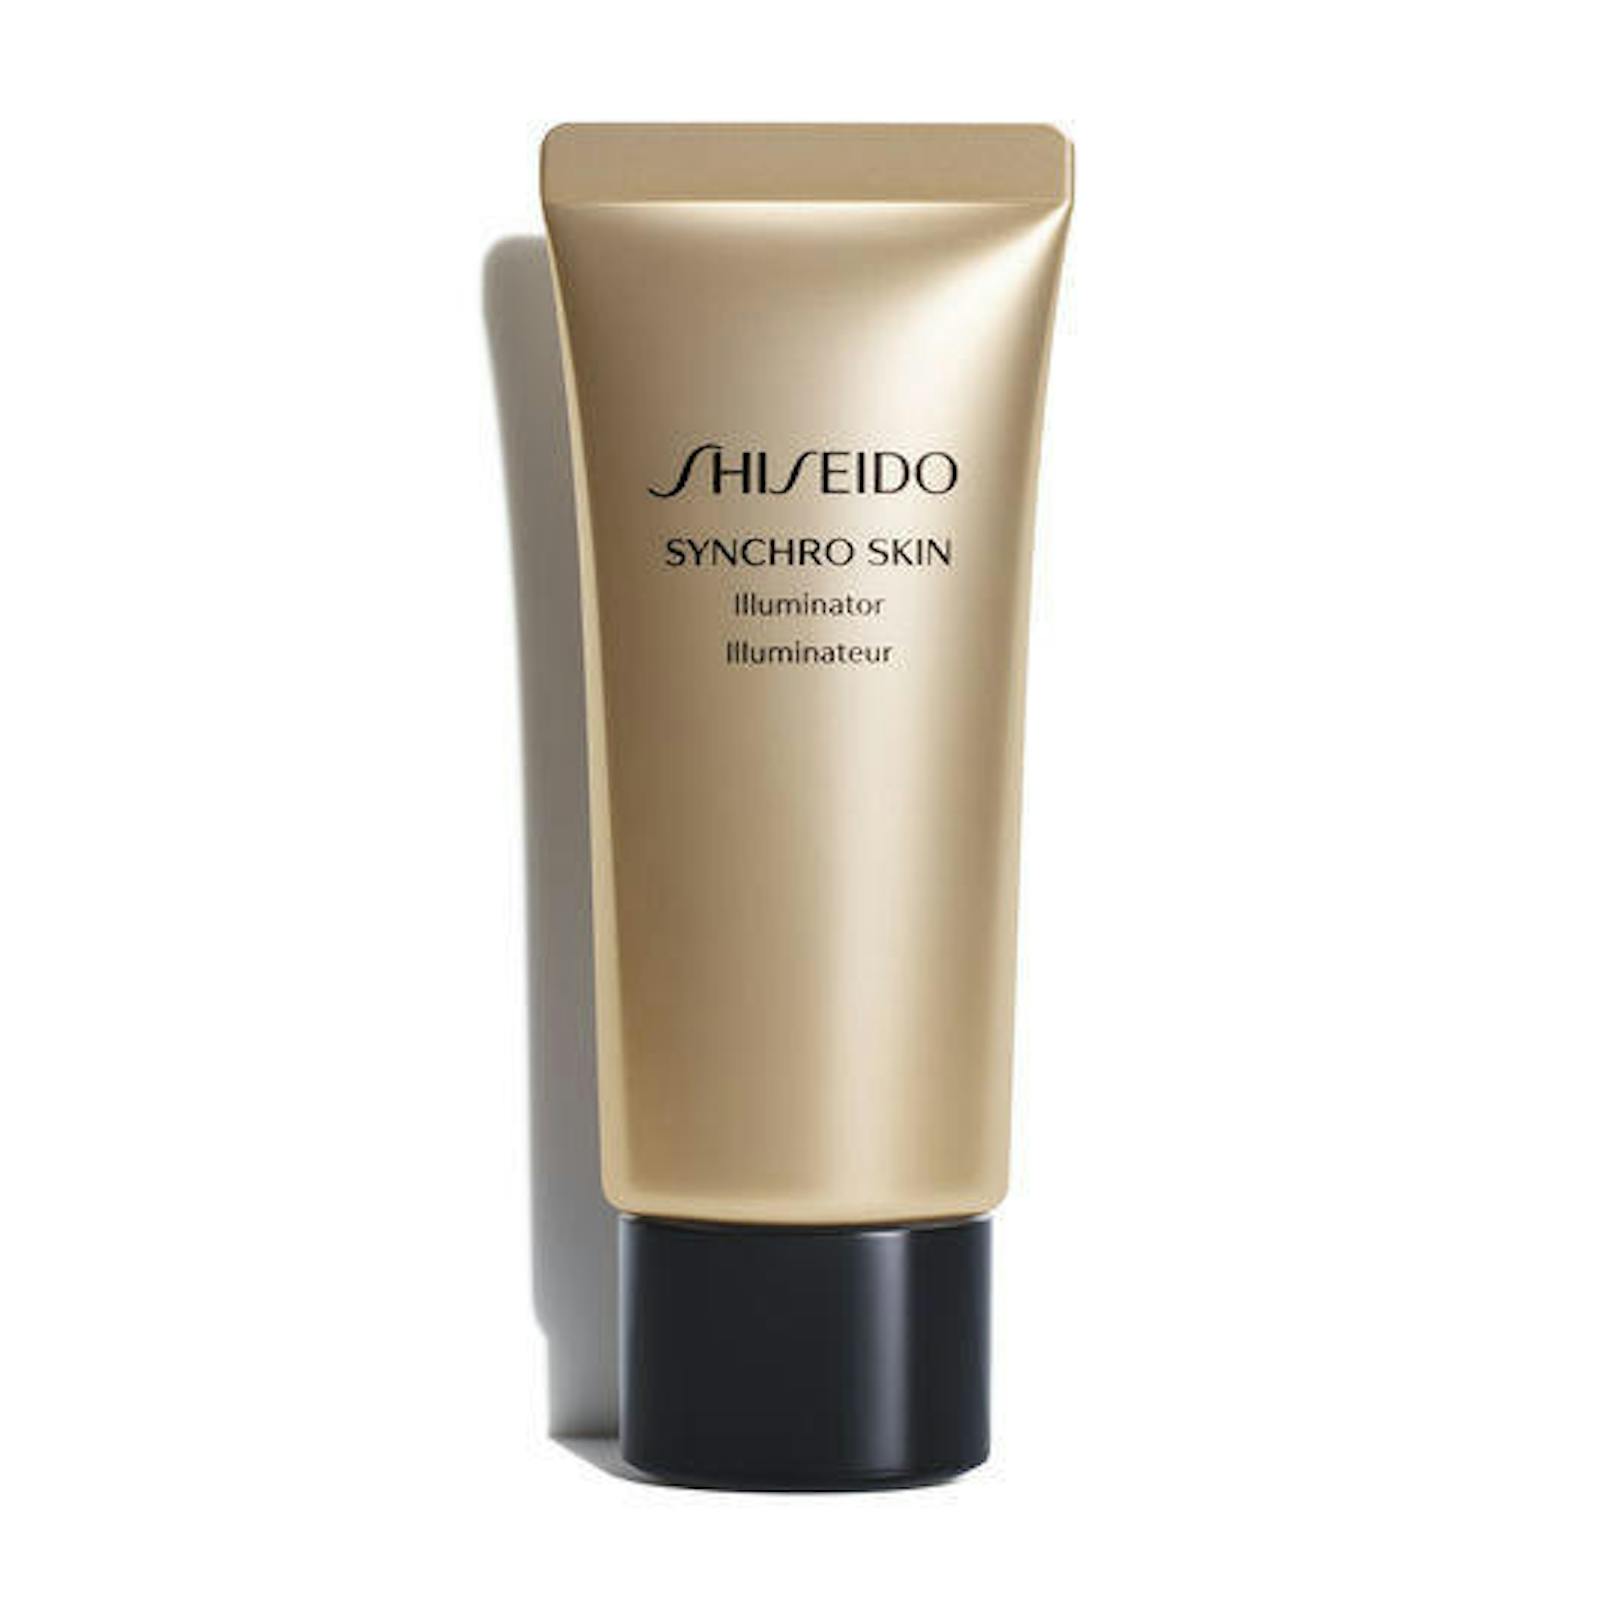 Für alle, die es dezent mögen und auf hochwertige Kosmetik wert legen: Shiseido hat mit dem "Synchro Skin Illuminator" einen wahren Glücksgriff gelandet. Die zarte Creme illuminiert die Haut optisch und kann gelayered werden. Das Produkt gibt es in zwei Farbnuancen. (Foto: Shiseido) 